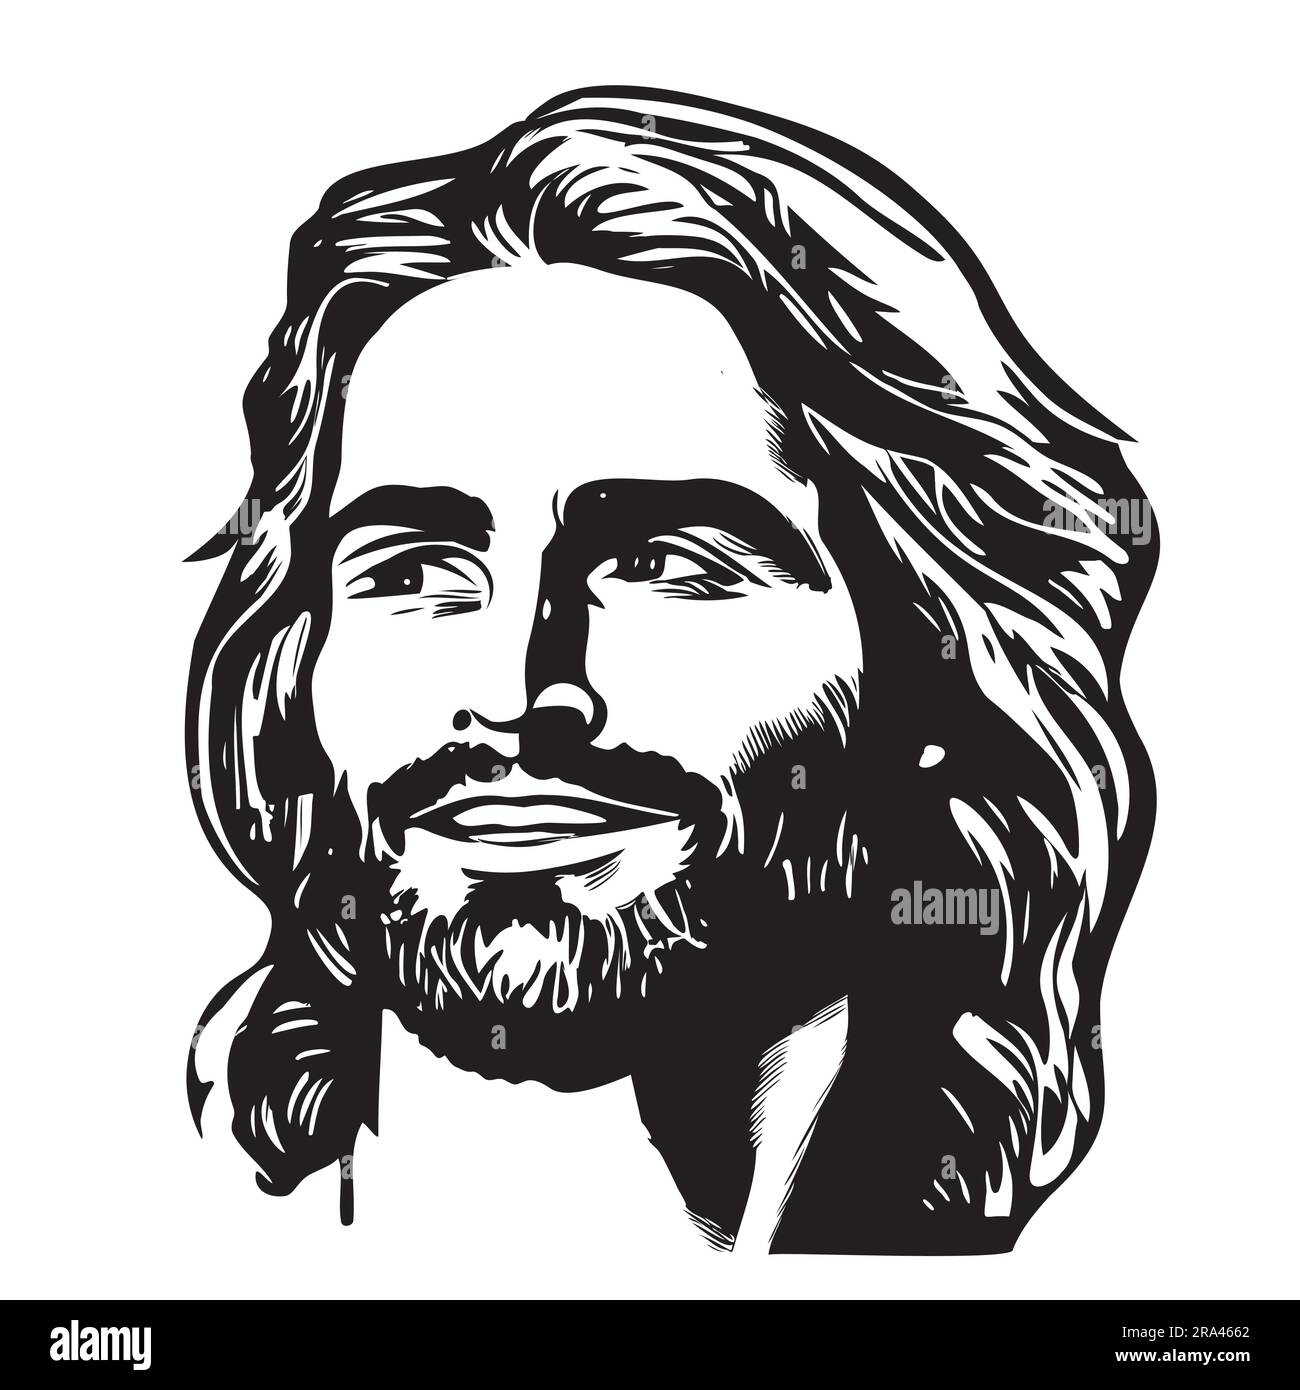 Face de Jésus esquisse abstraite main dessinée dans l'illustration de style Doodle Illustration de Vecteur